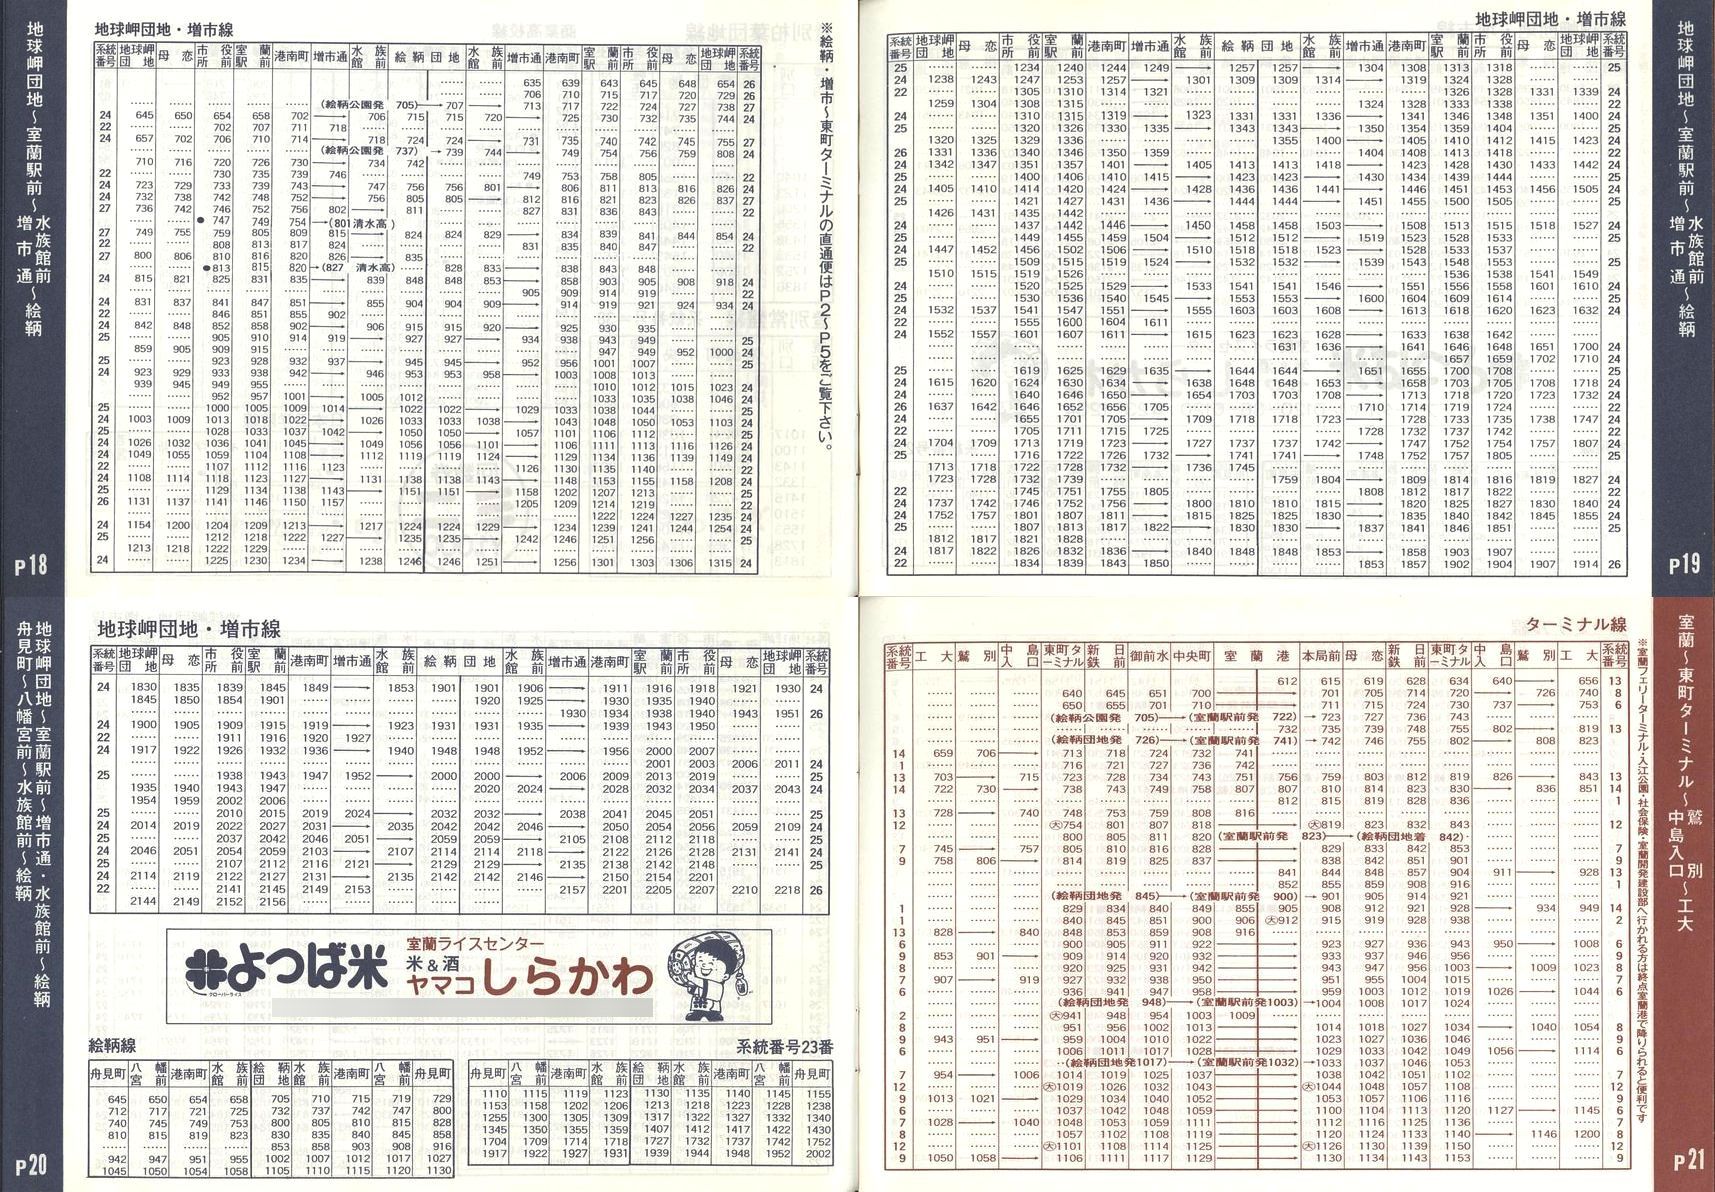 1989-04-01改正_道南バス_室蘭市内線冊子時刻表18-21